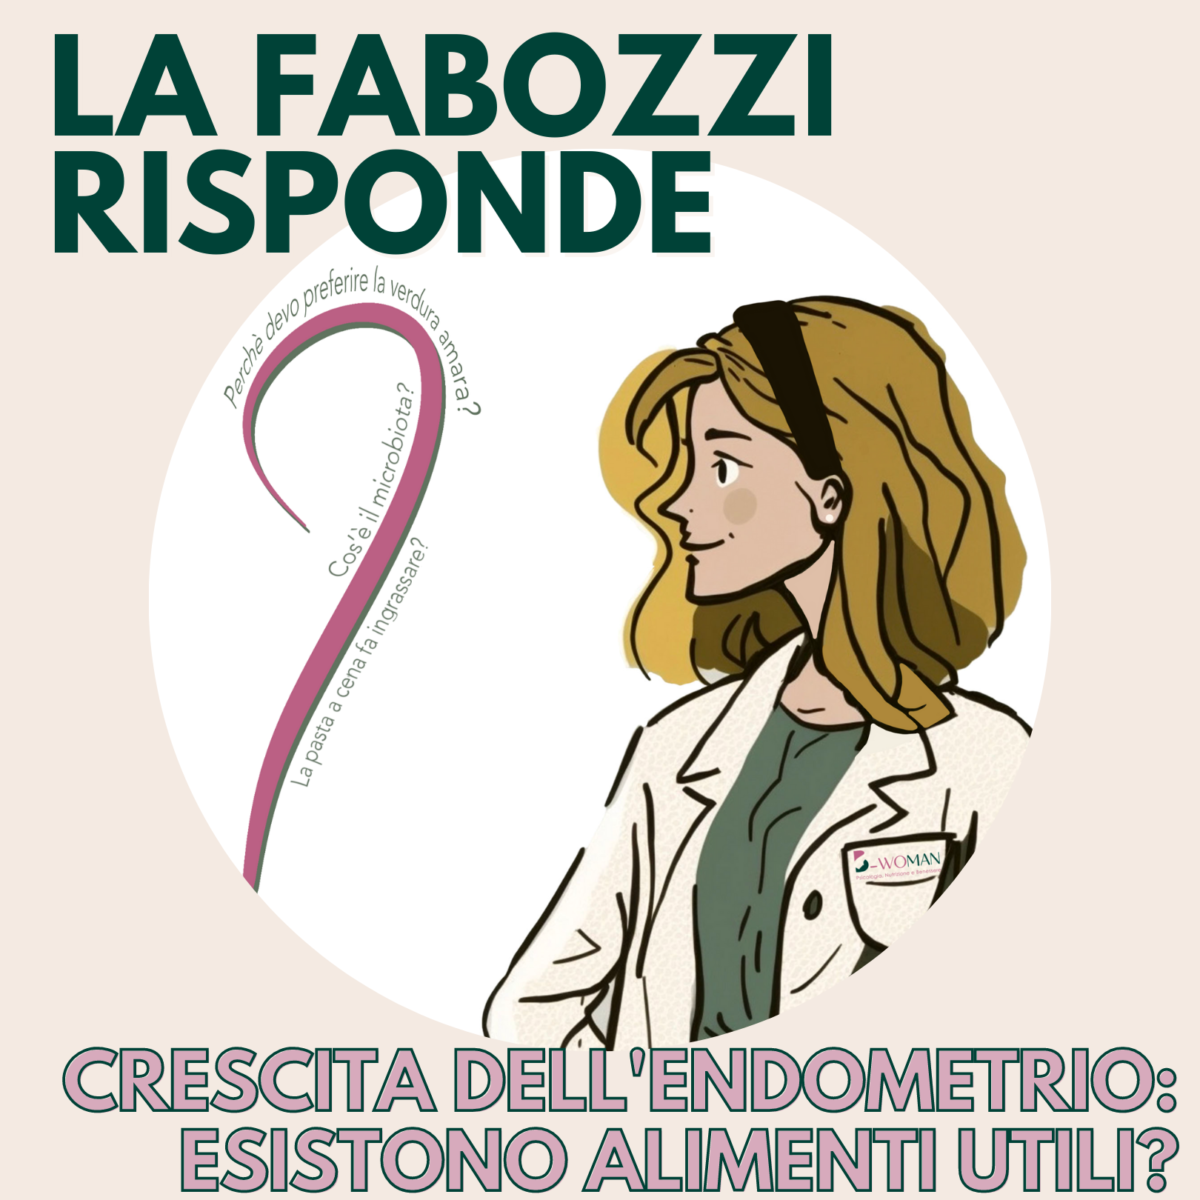 La-Fabozzi-risponde-22Crescita-dellendometrio-esisto-alimenti-utili-1200x1200.png